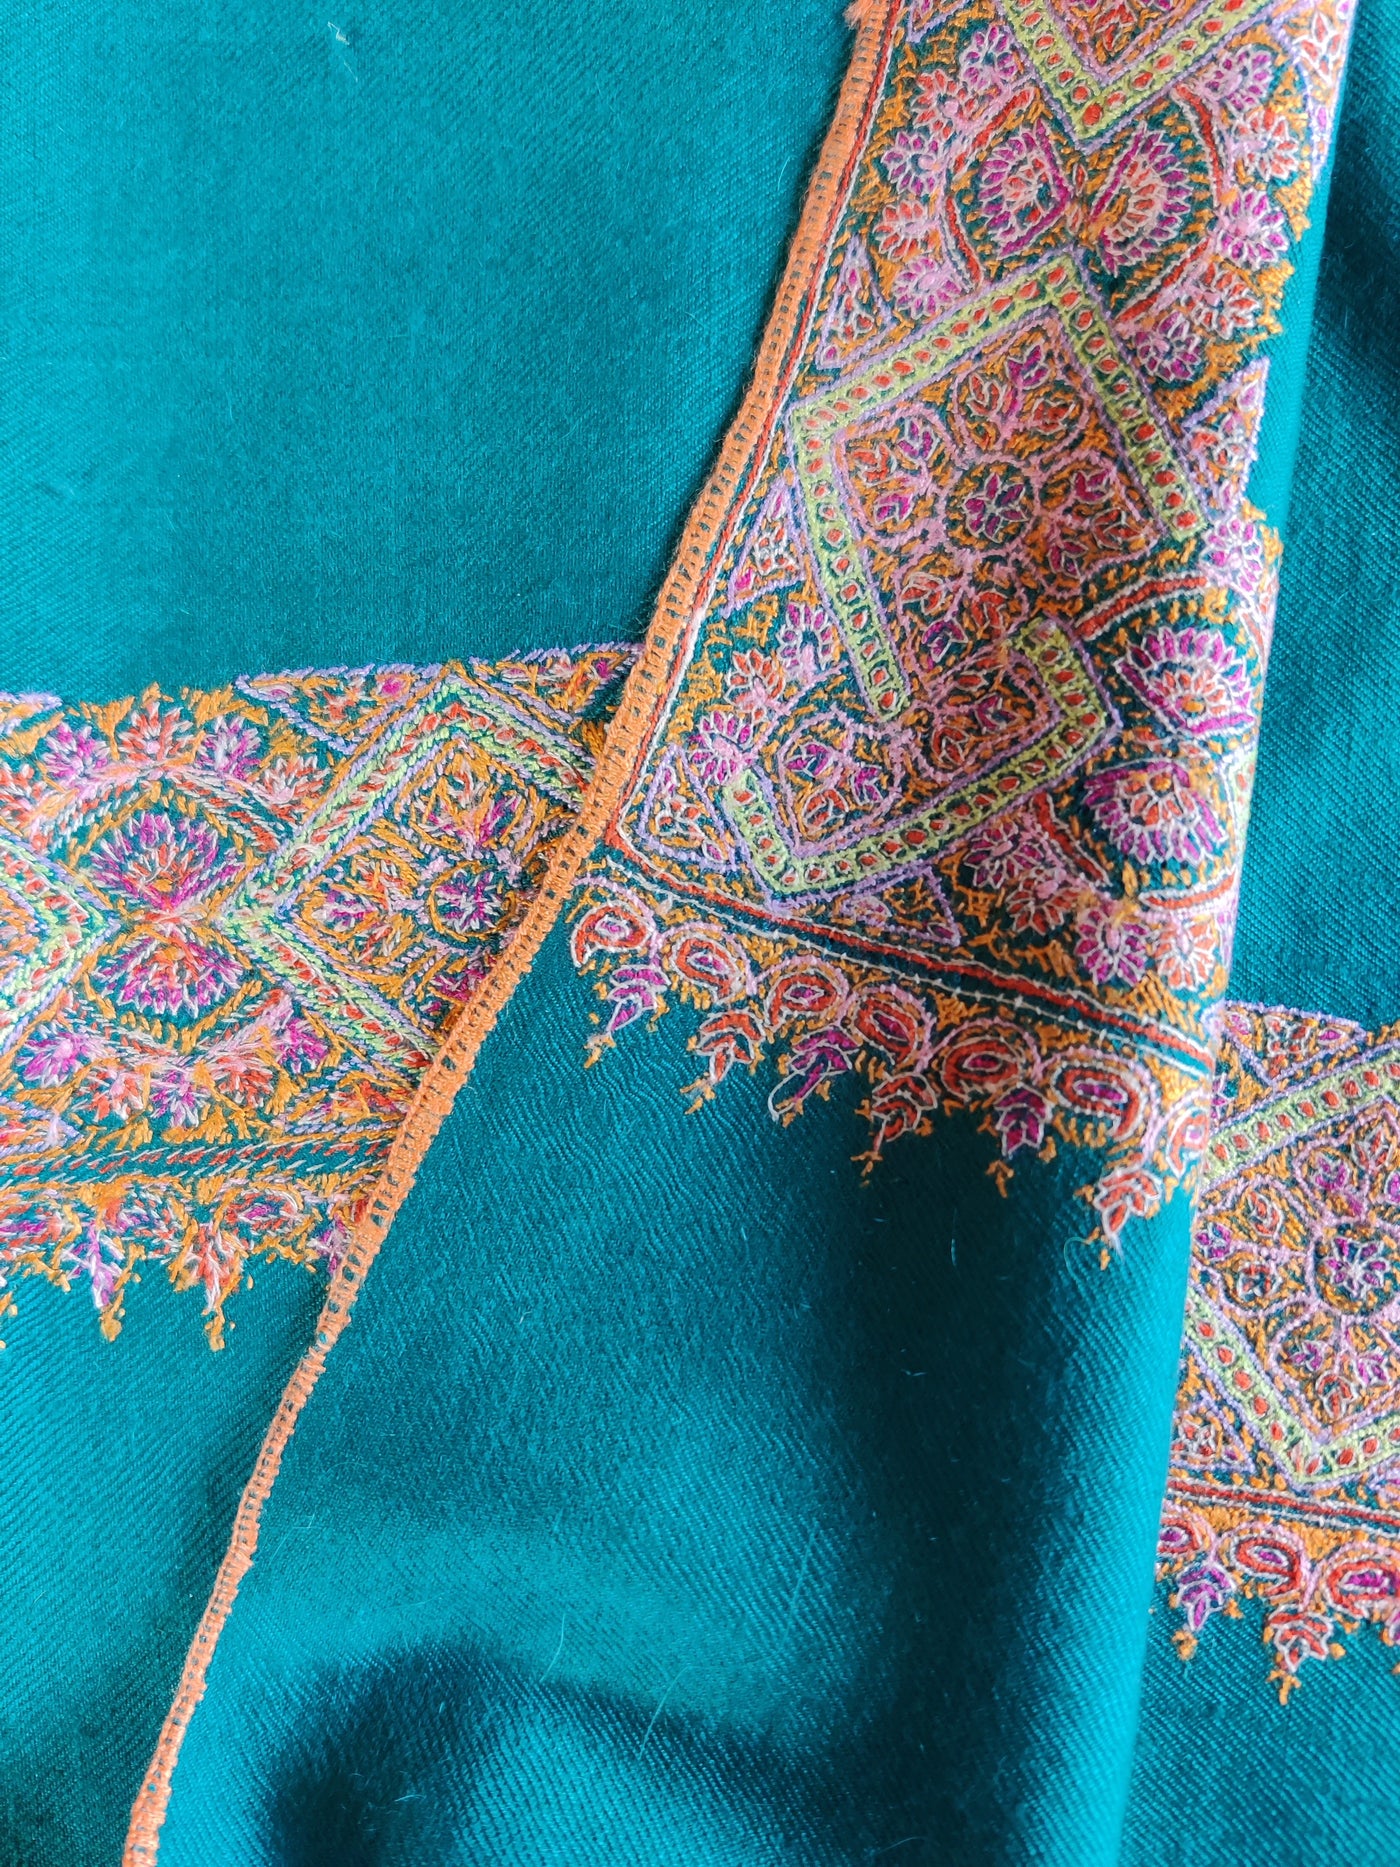 Blue Pure Pashmina / Cashmere Shawl with Multicolor Sozni Hand Embroidery